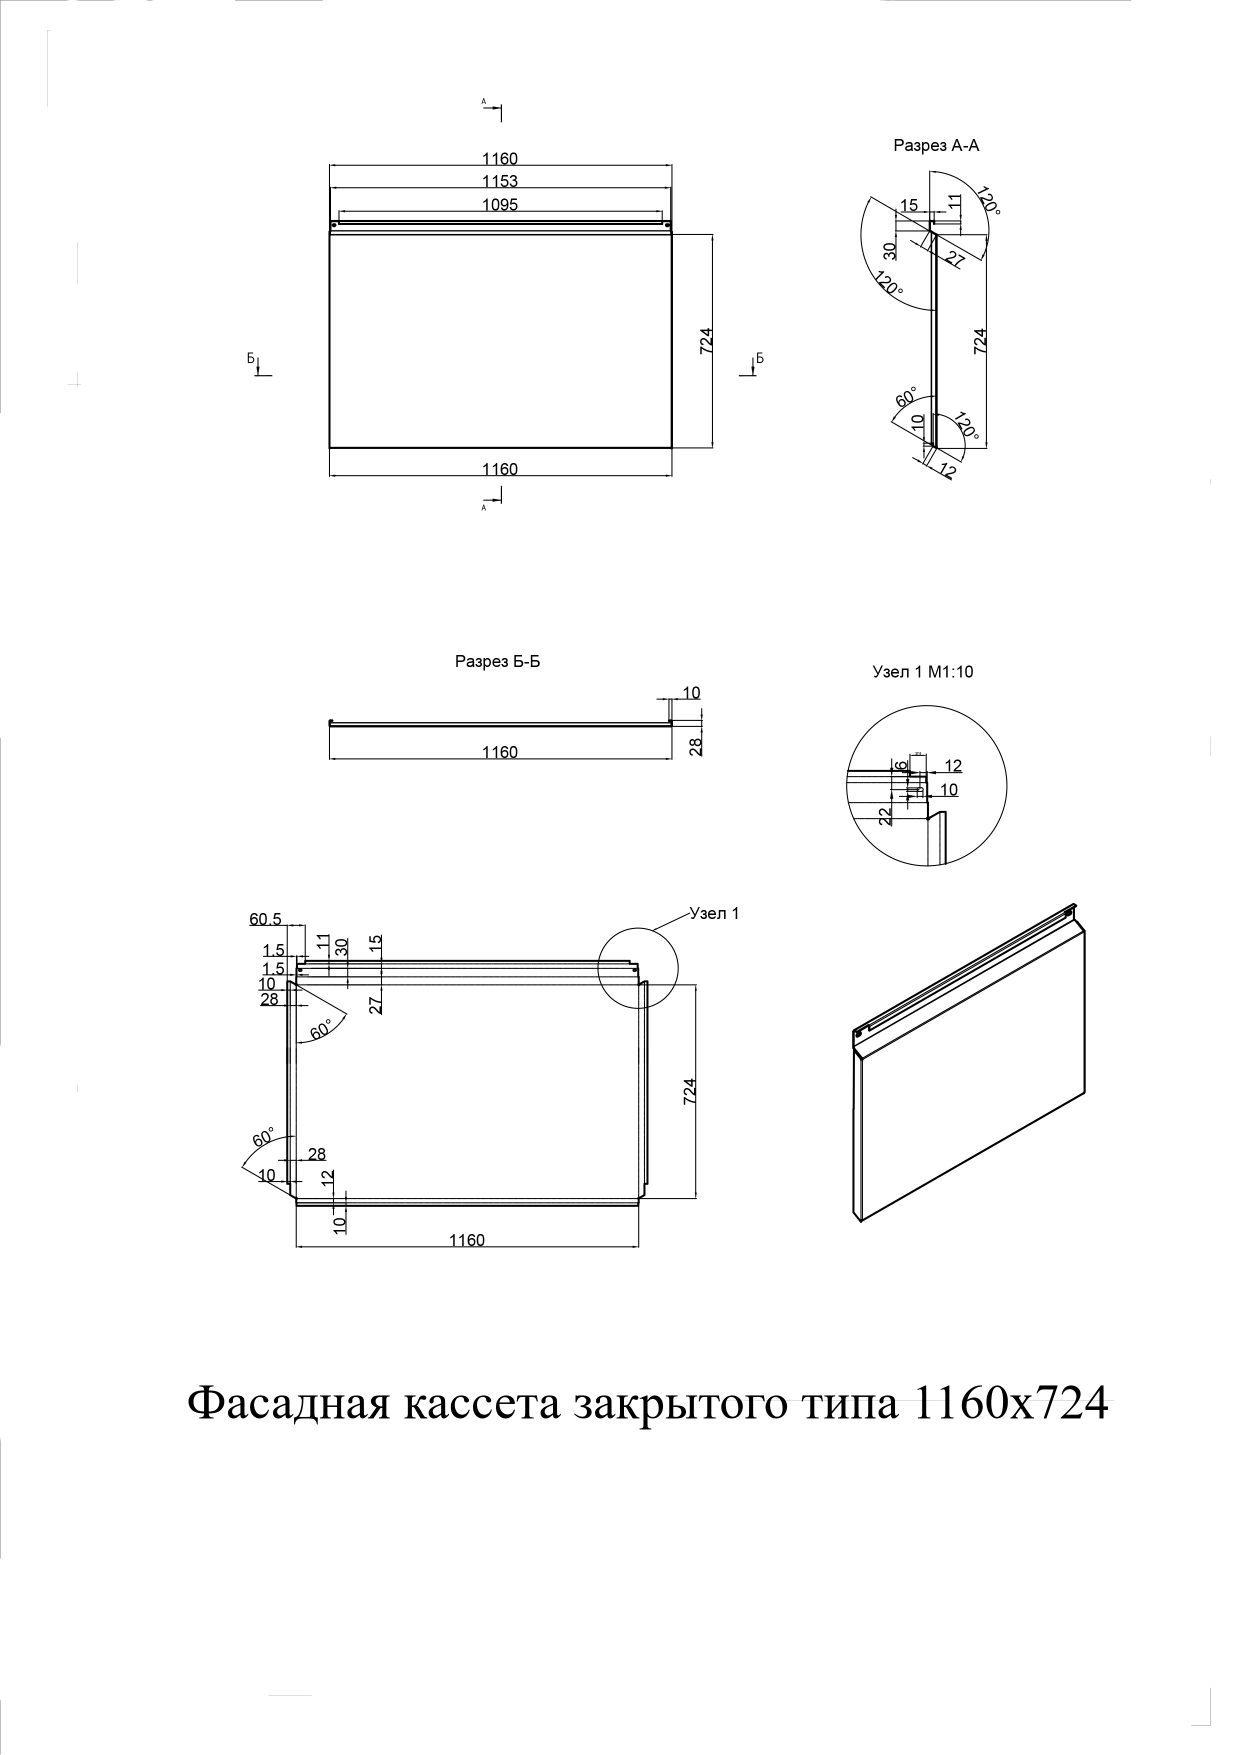 Фасадные кассеты закрытого типа из оцинкованной стали с полимерным покрытием 1160х724, 1,0 мм - чертеж